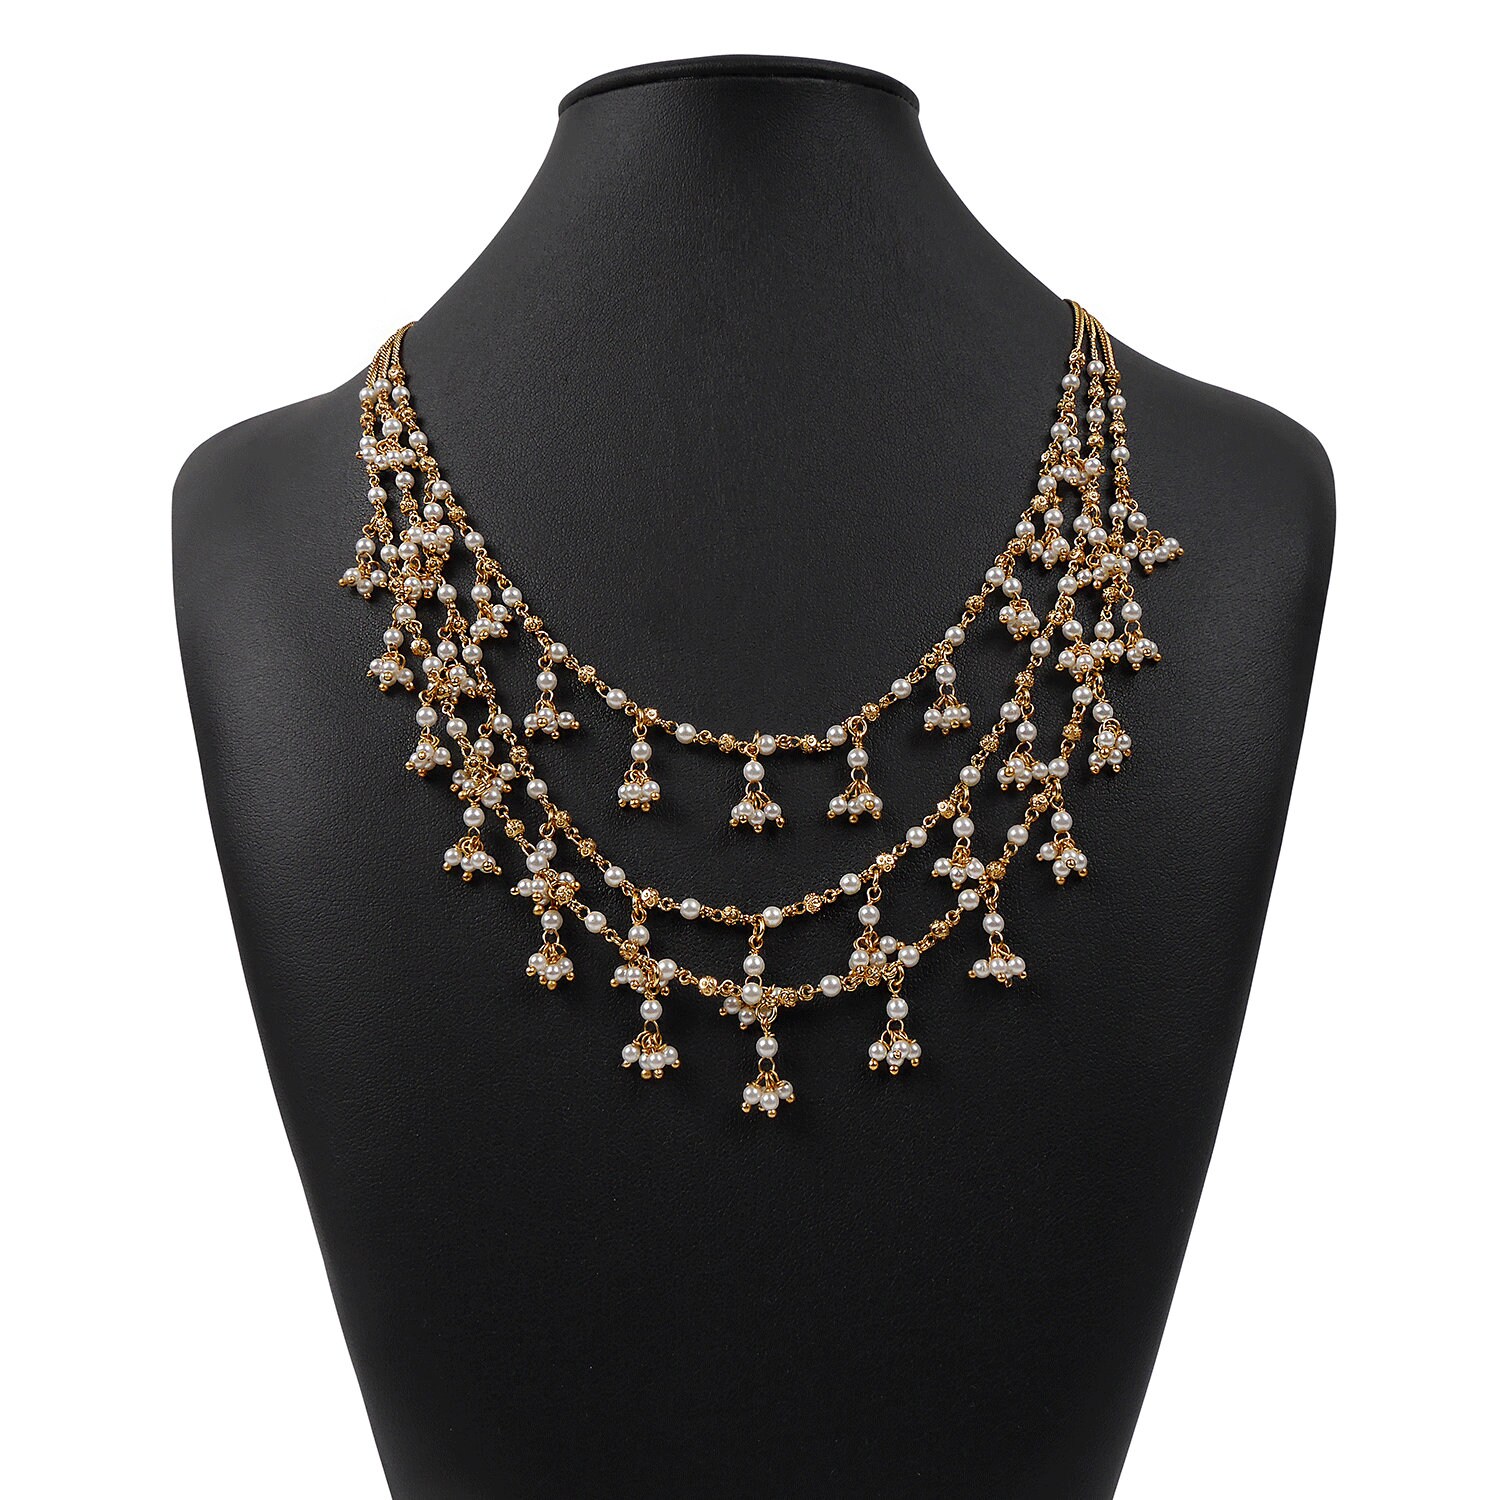 返品交換不可】 Simsly Three Layered Necklace with Crysral Beads Pendant Jewlery  Pearl Neck - www.voltaredondaimoveis.com.br